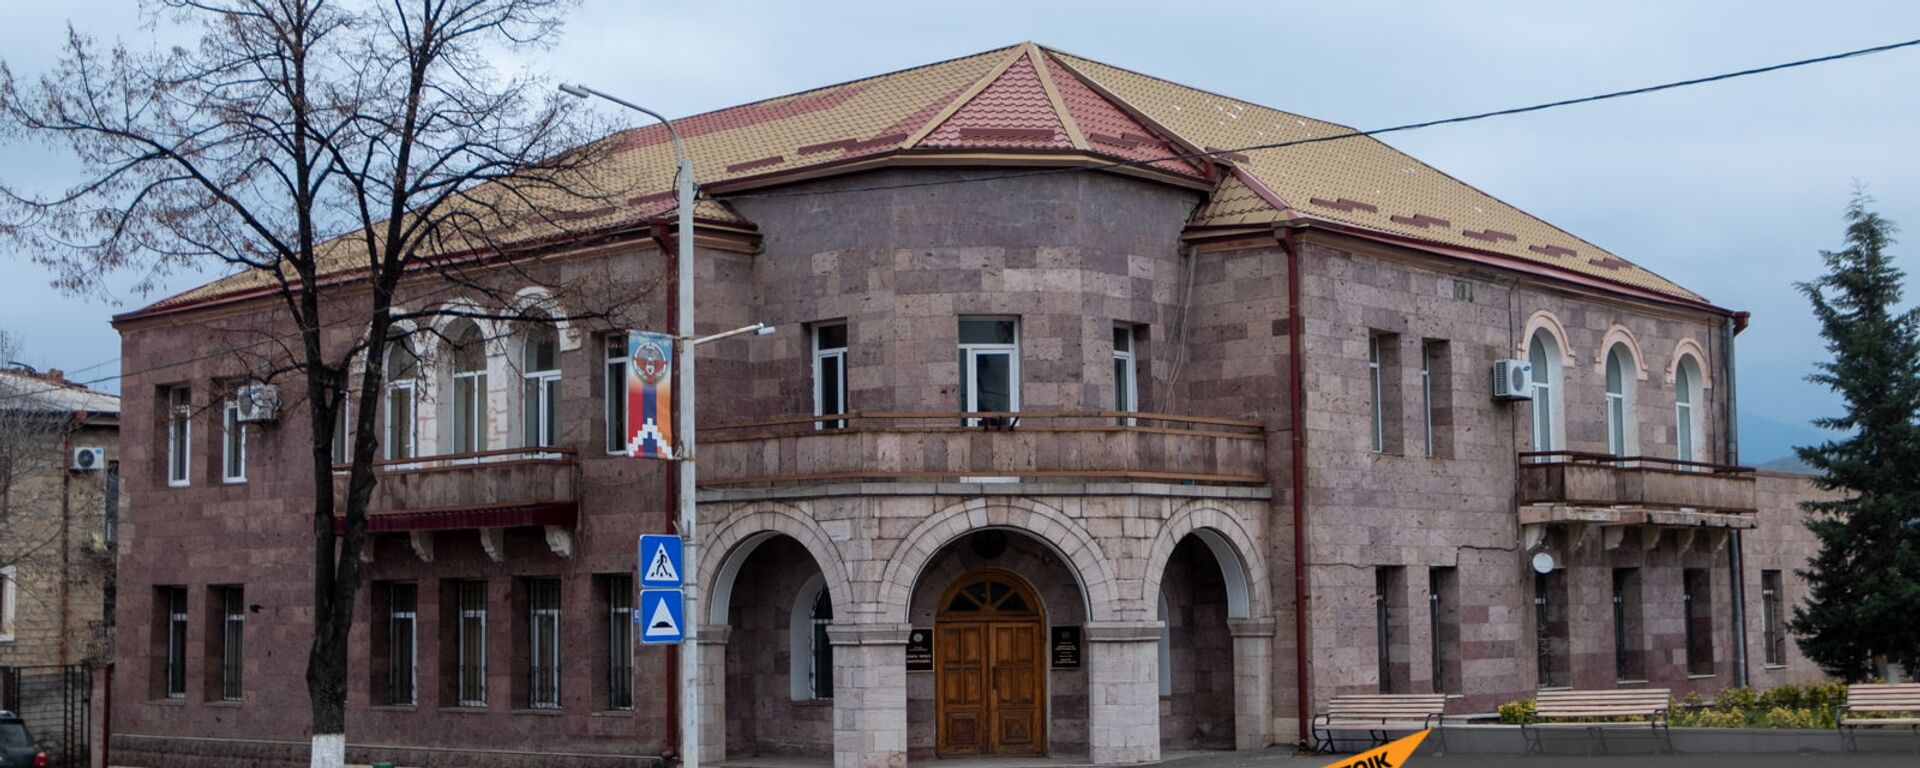 Здание Министерства иностранных дел Карабаха - Sputnik Արմենիա, 1920, 01.02.2021